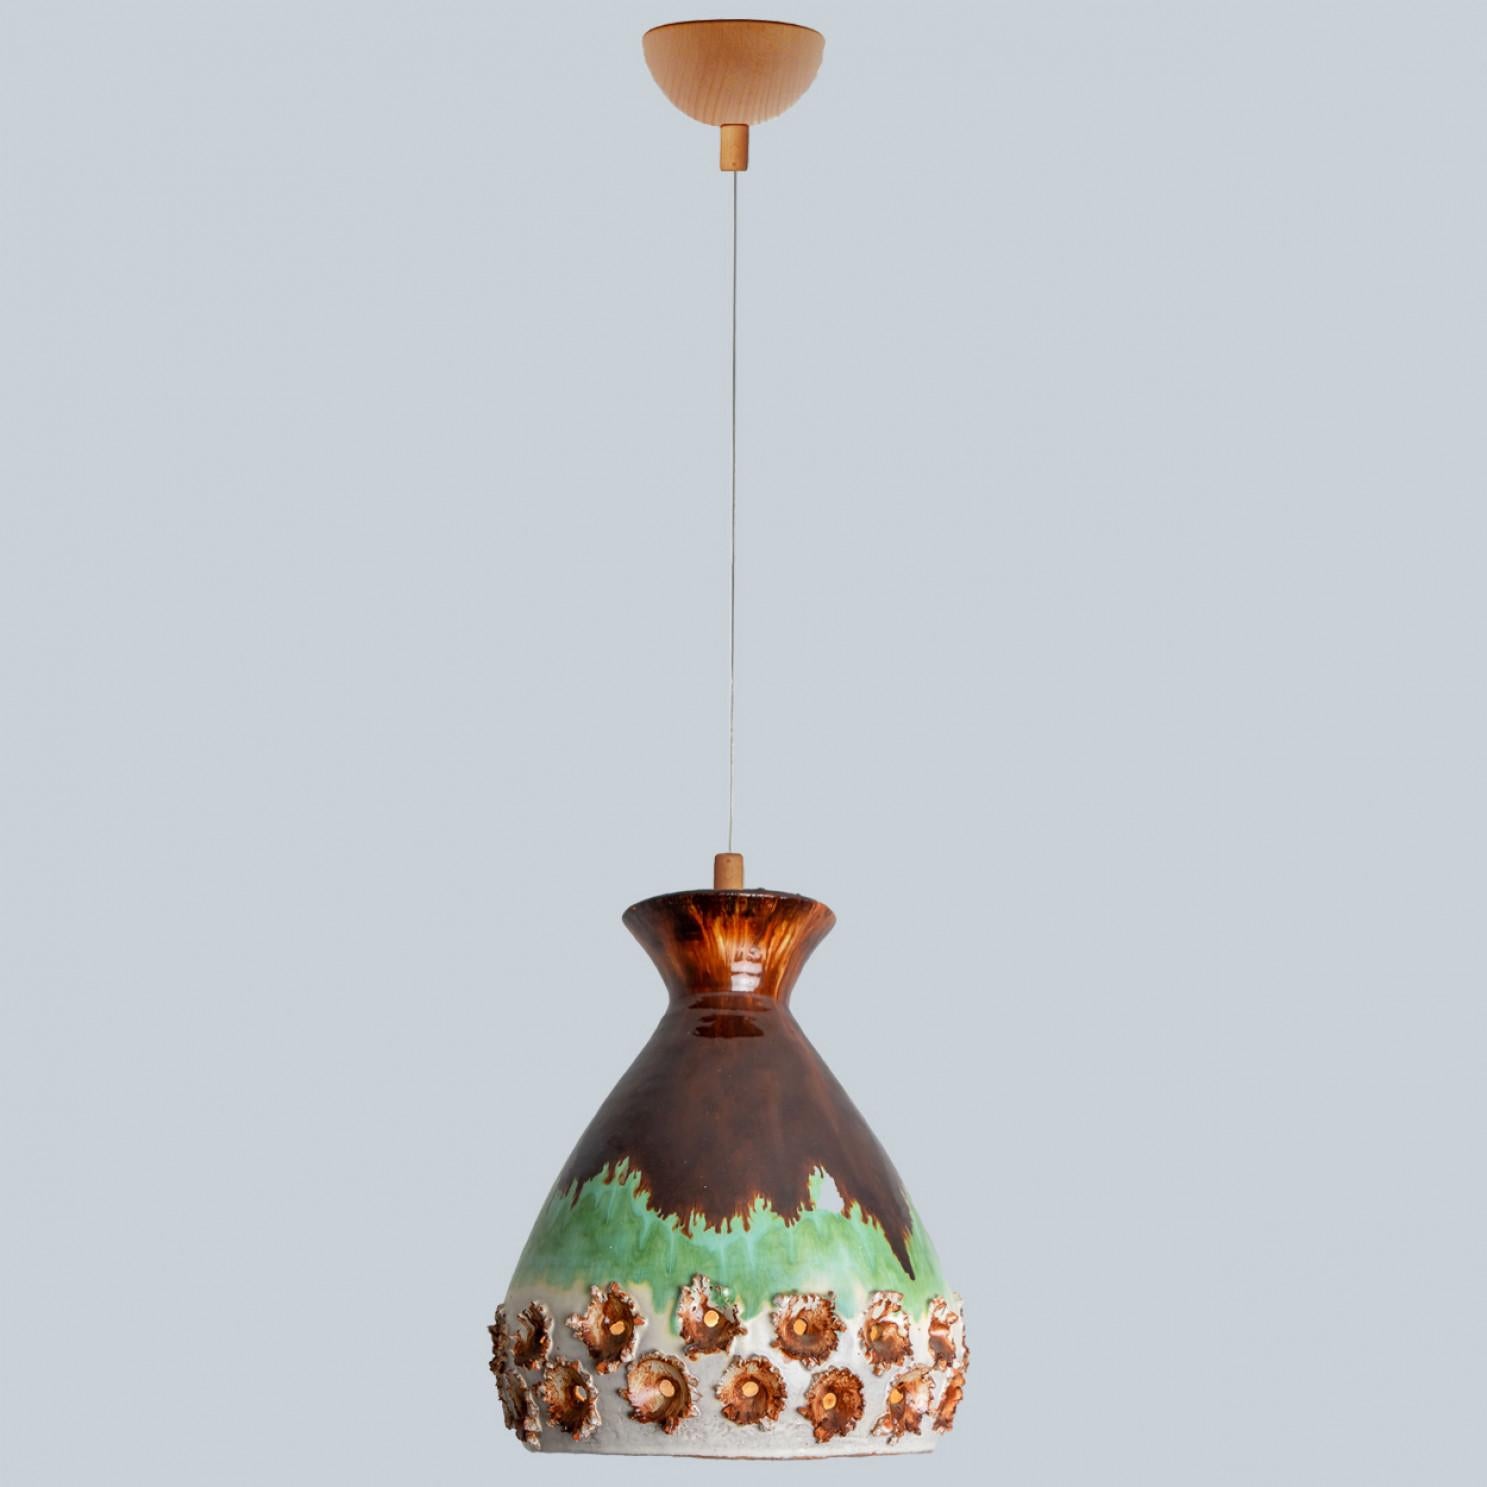 Superbe lampe suspendue ronde avec une forme inhabituelle en forme d'œuf, faite de céramiques vertes et brunes richement colorées, fabriquée dans les années 1970 au Danemark. Nous disposons également d'une multitude de jeux de lumière et